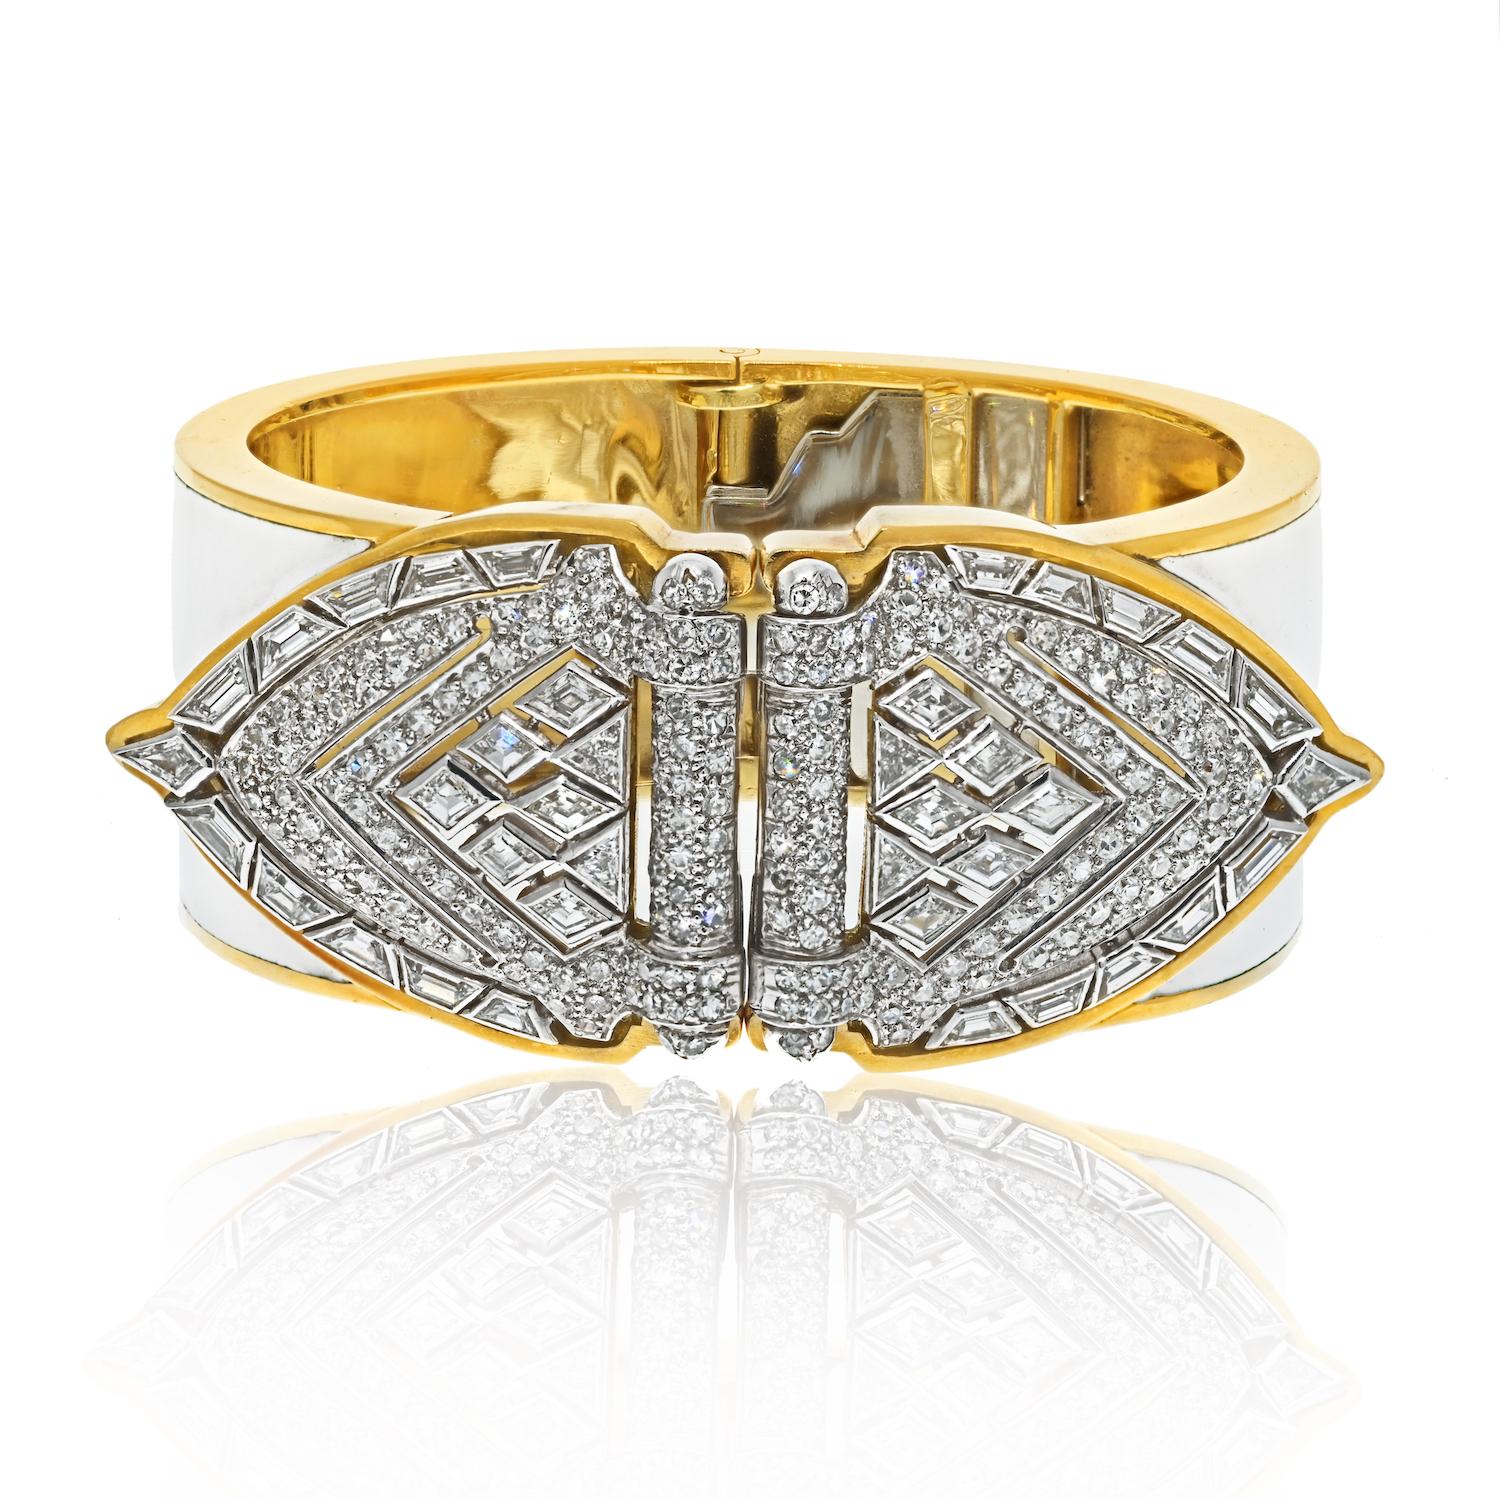 Le bracelet manchette en émail blanc de David Webb est un bijou exquis conçu avec des extrémités en forme de bouclier en diamant platine qui peuvent être retirées des extrémités de la manchette et portées comme doubles clips. Les boucliers sont